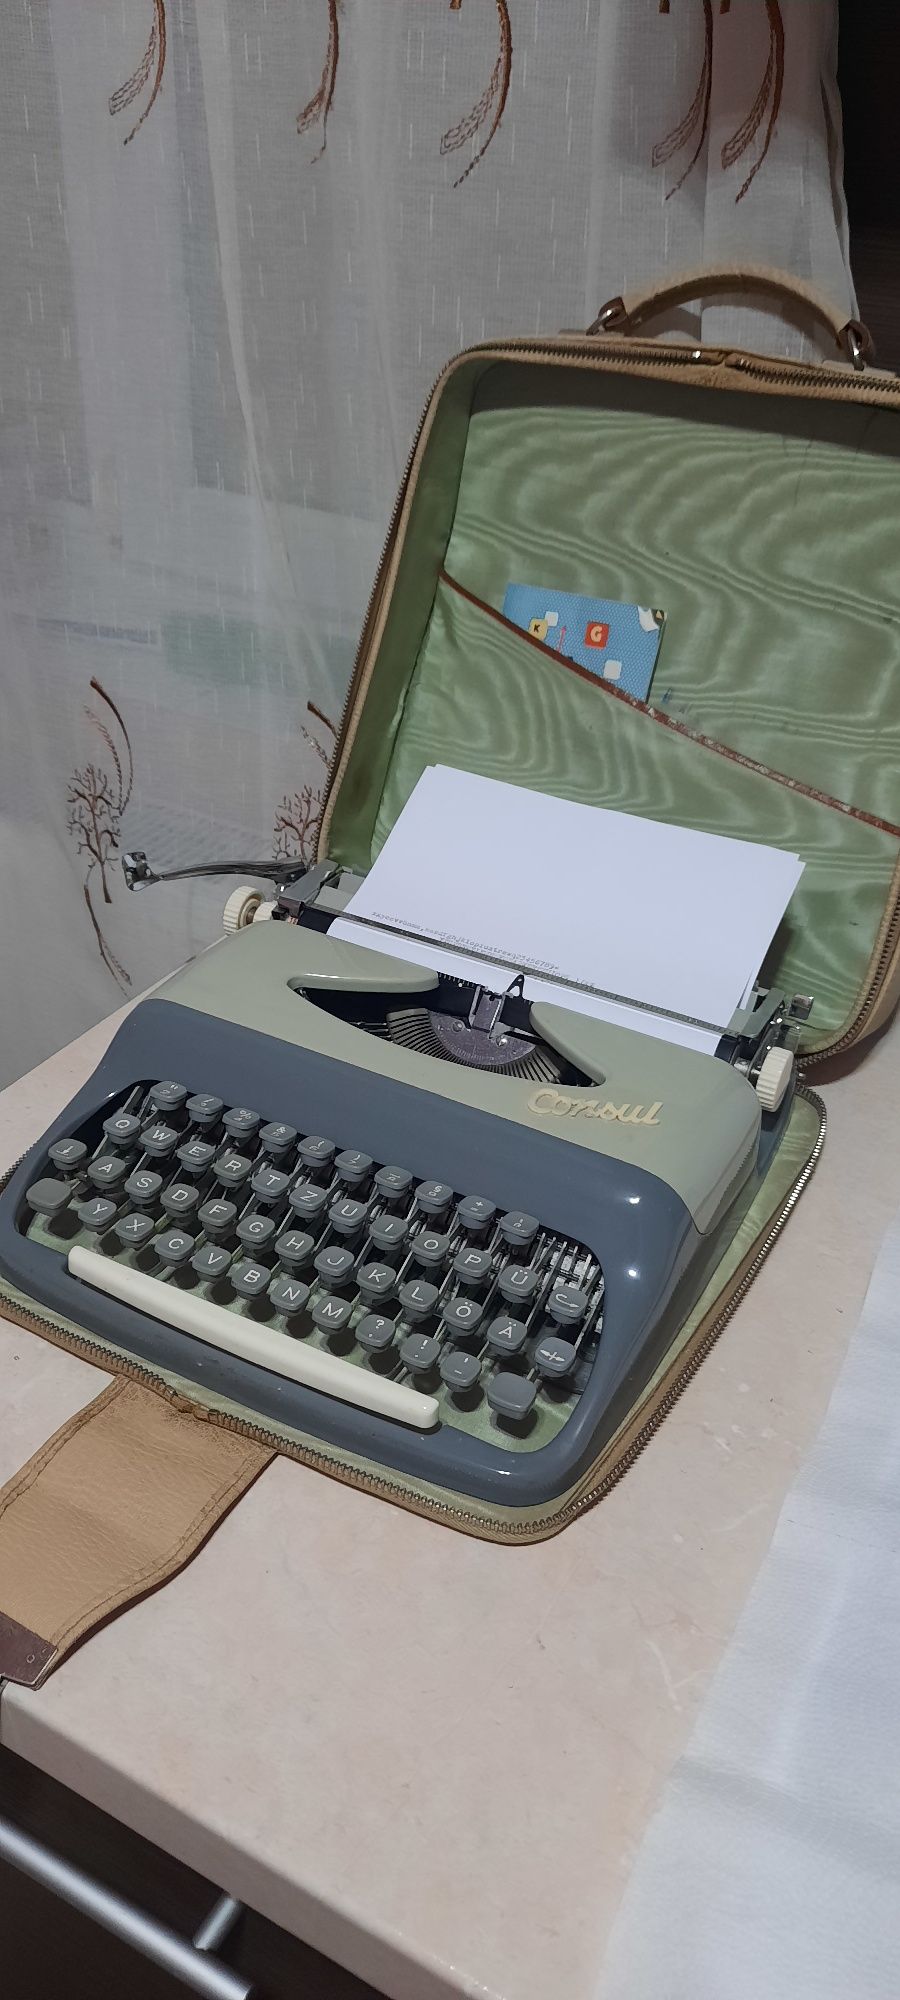 Mașină de scris Consul impecabilă